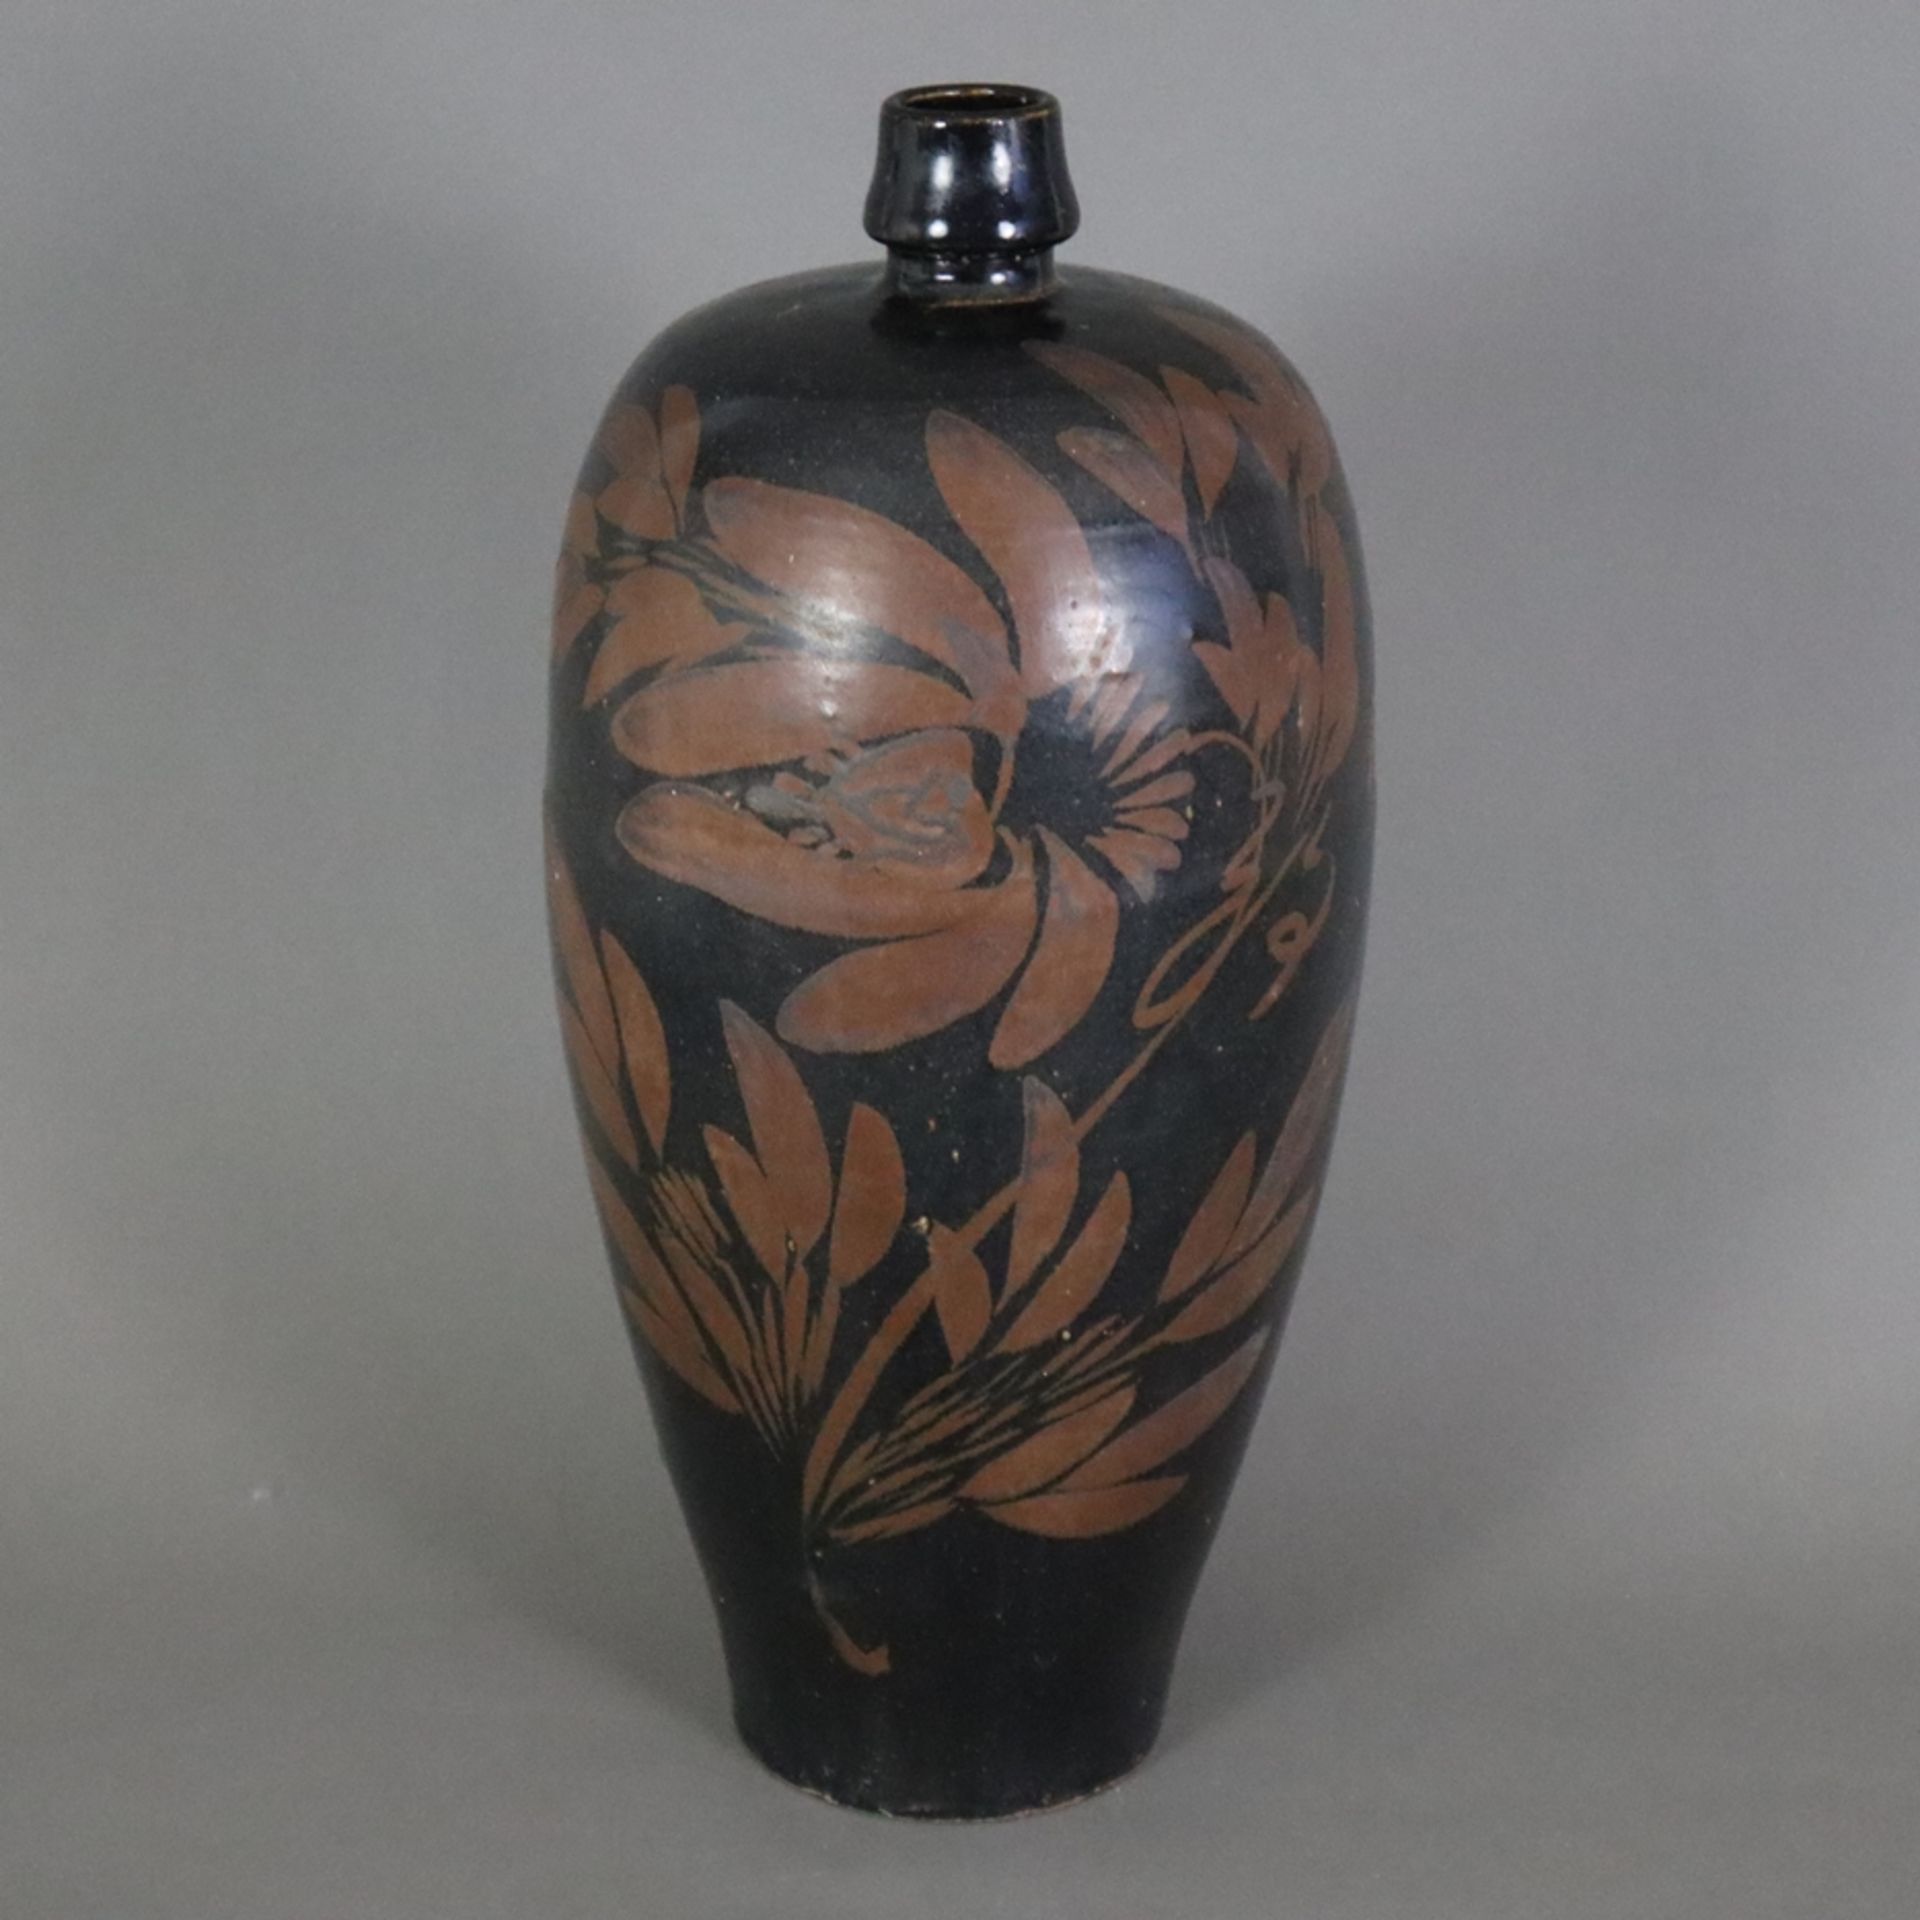 Vase 'Meiping' im Stil der 'Cizhou'-Ware - China, Steinzeug, länglicher schmaler Meiping-Typus, gan